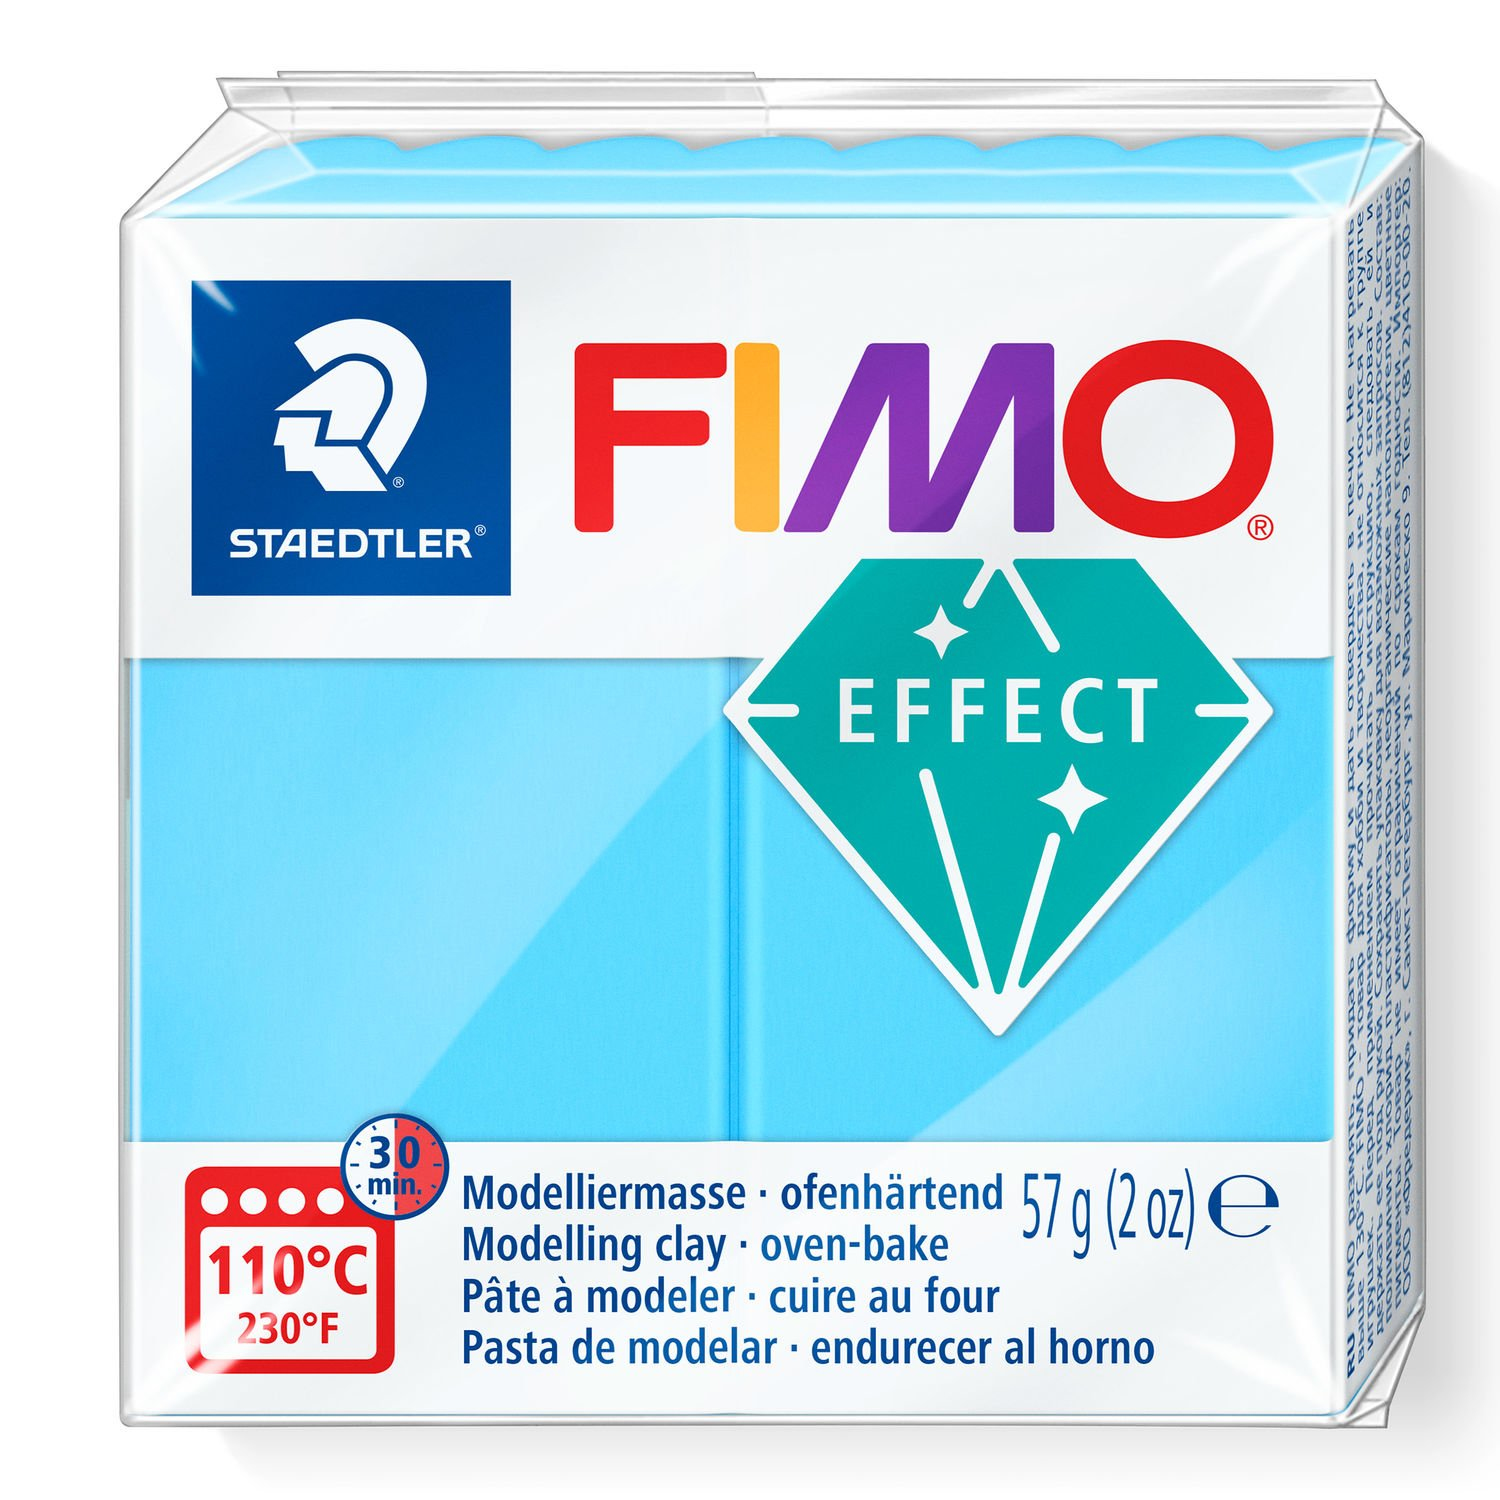 STAEDTLER FIMO 8010 - Knetmasse - Blau - Erwachsene - 1 Stück(e) - Neon blue - 1 Farben